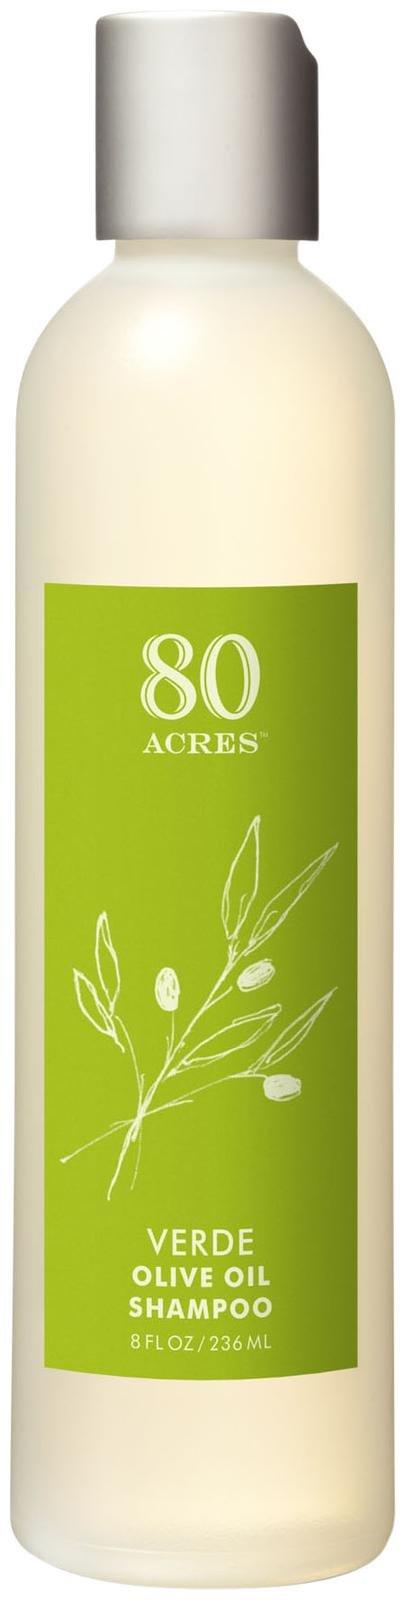 80 Acres Verde Olive Oil Shampoo - 8 Oz